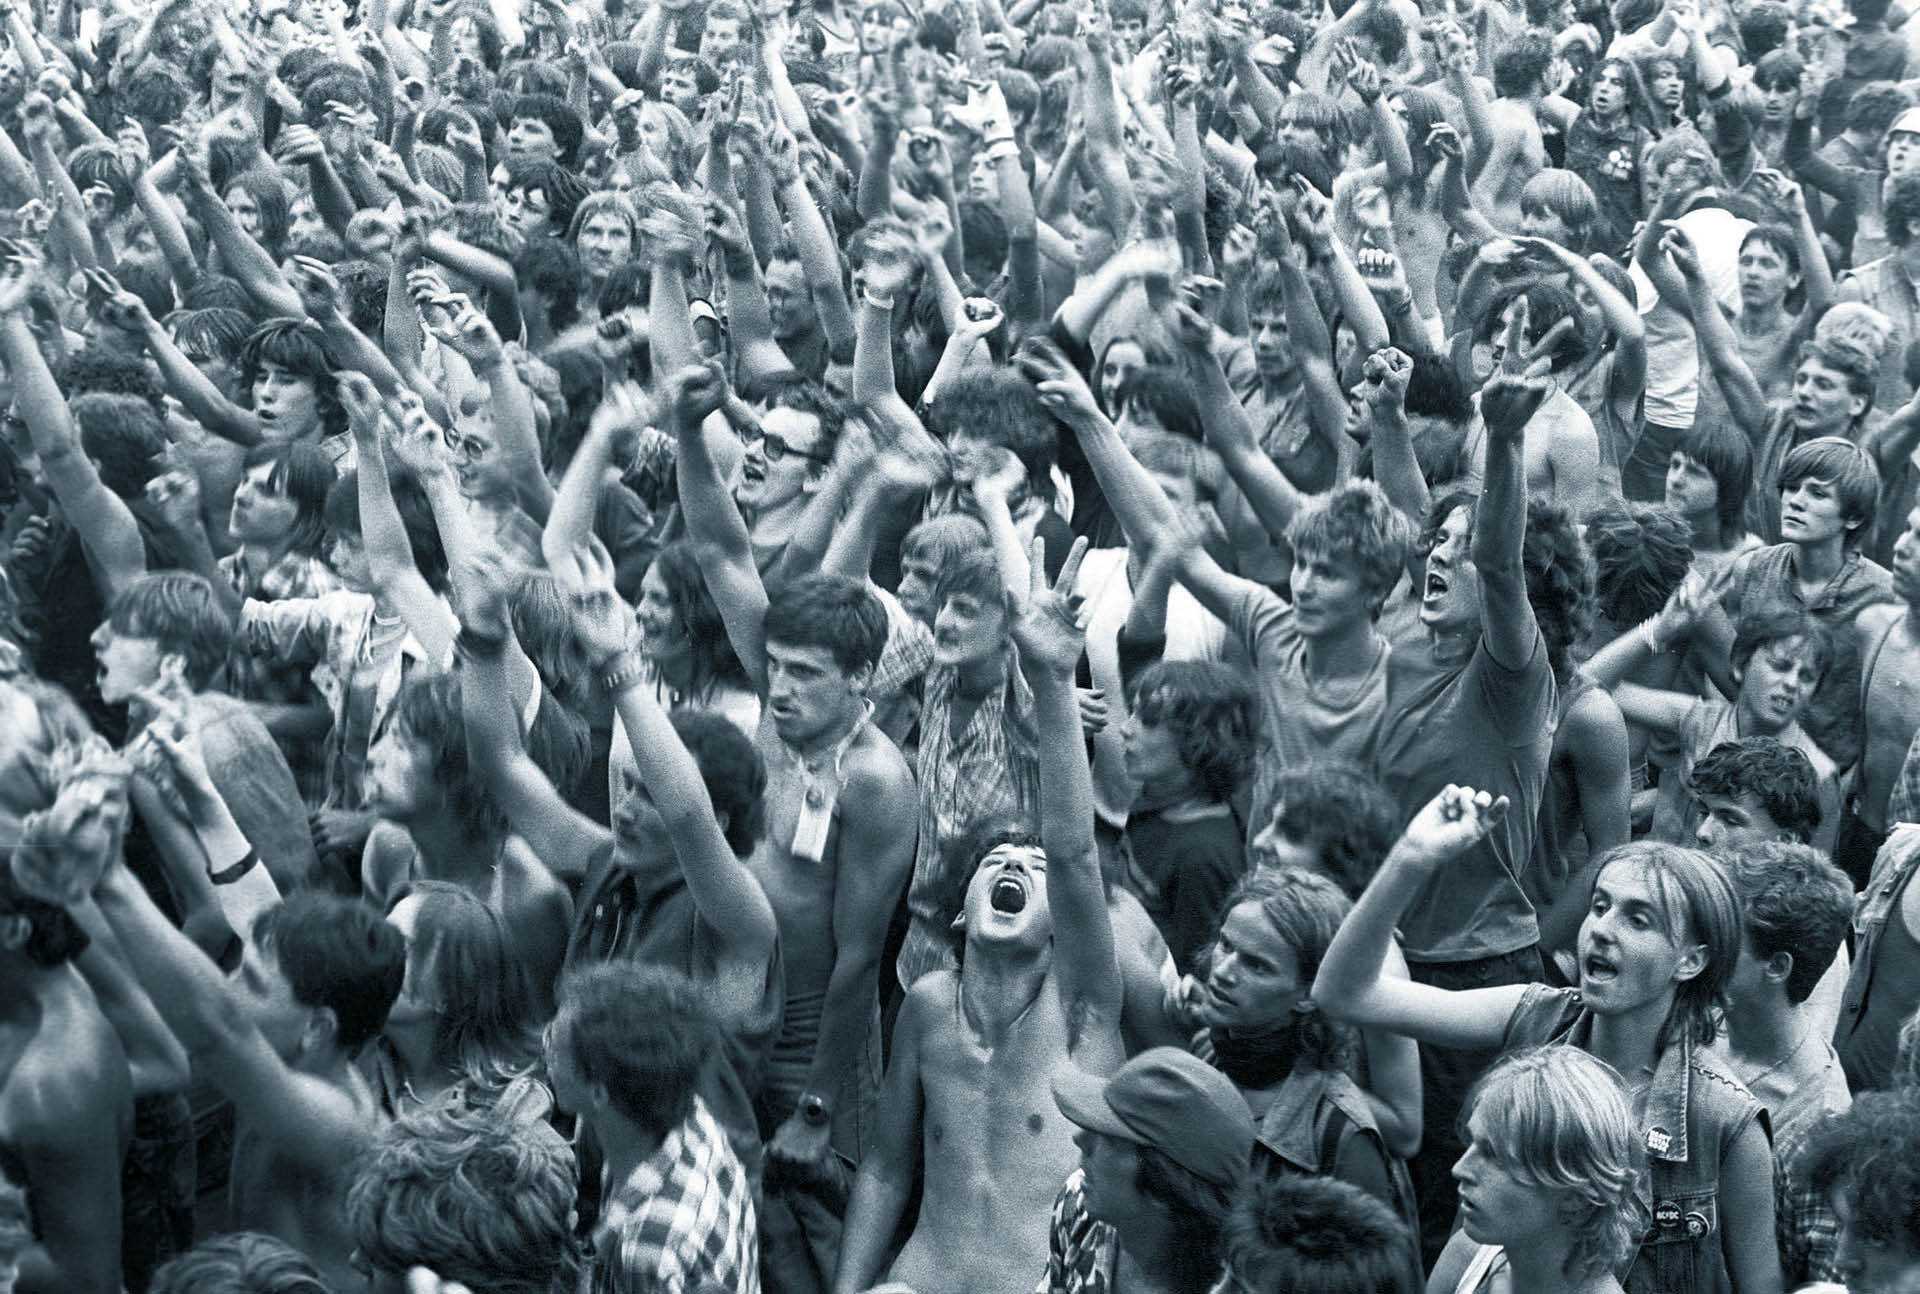 Metalowy koncert na festiwalu w Jarocinie,sierpień, 1985 r.